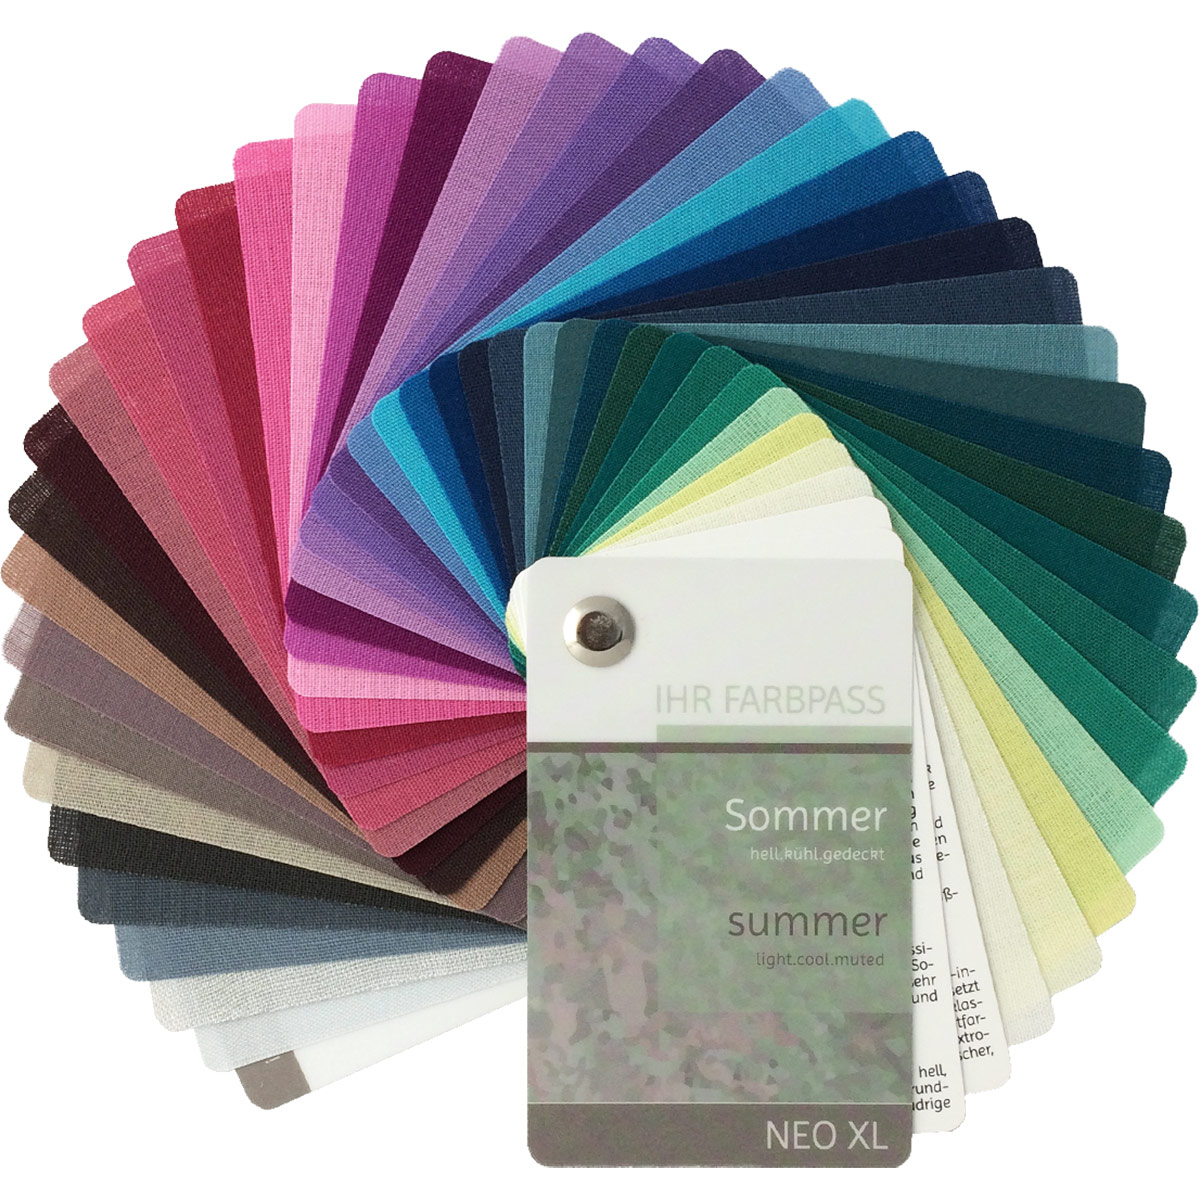 Farbpass Sommer - Neo XL, 40 Farben